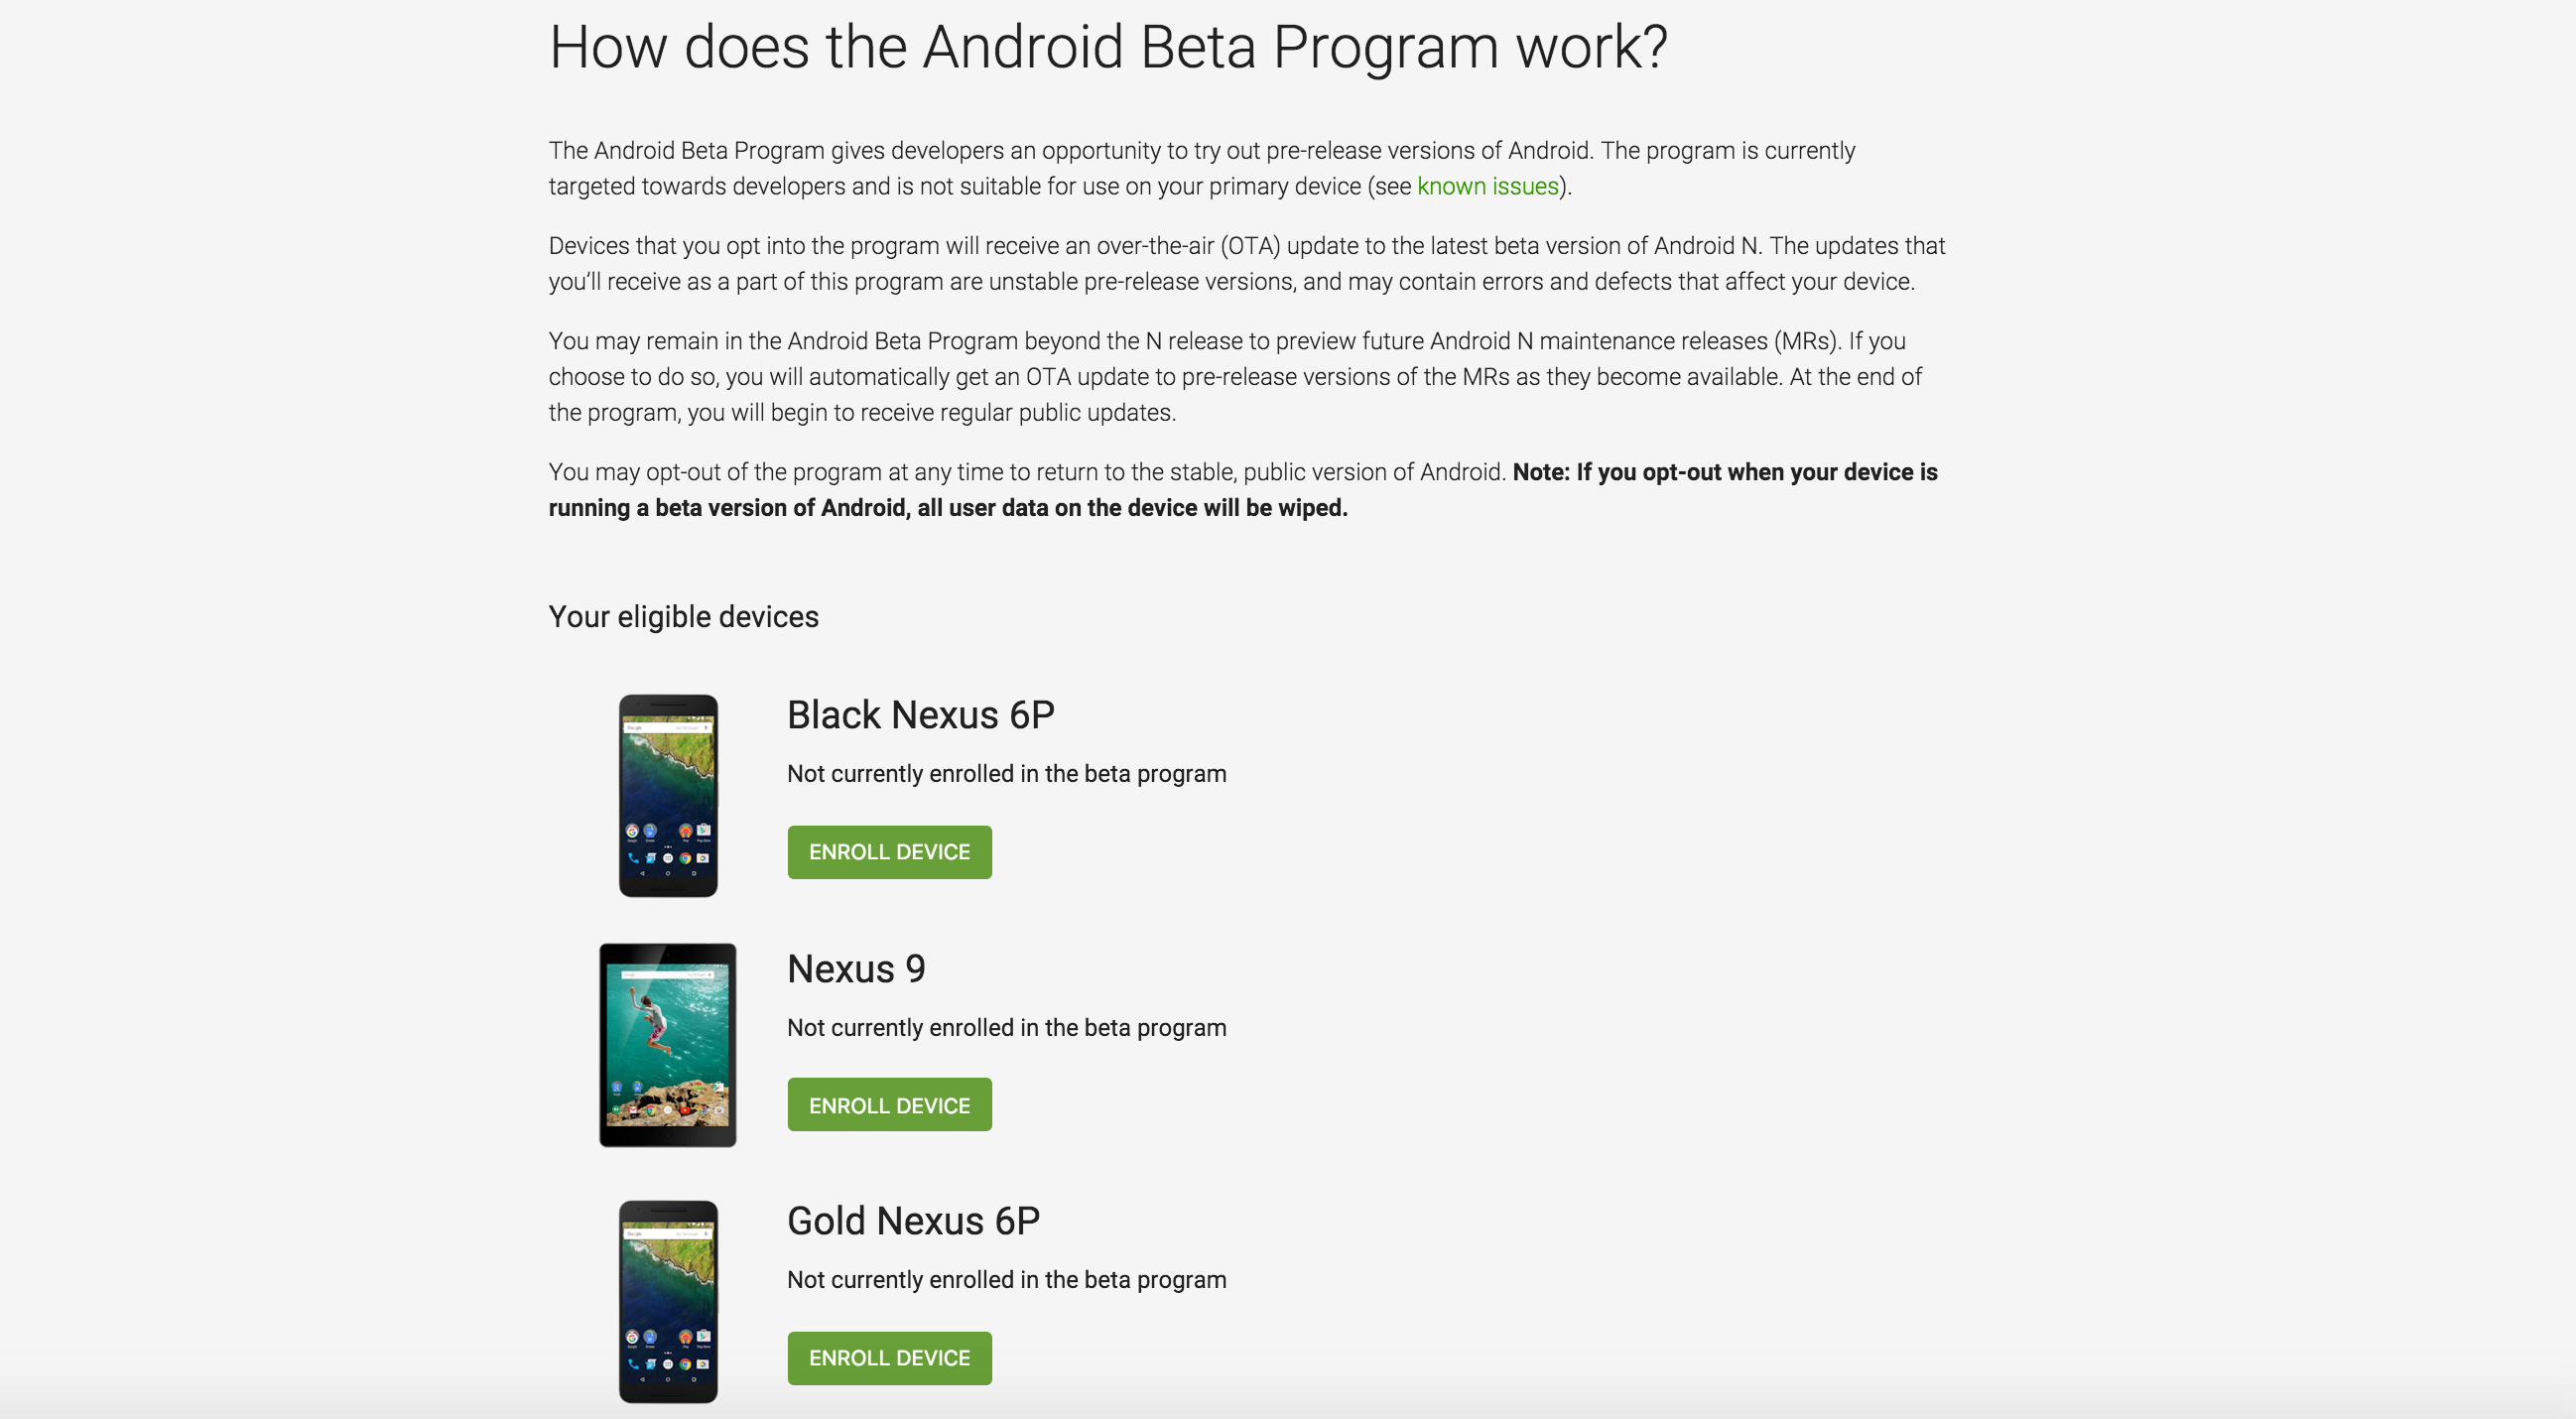 Android Beta Program Screen Shot 2016 03 09 at 1